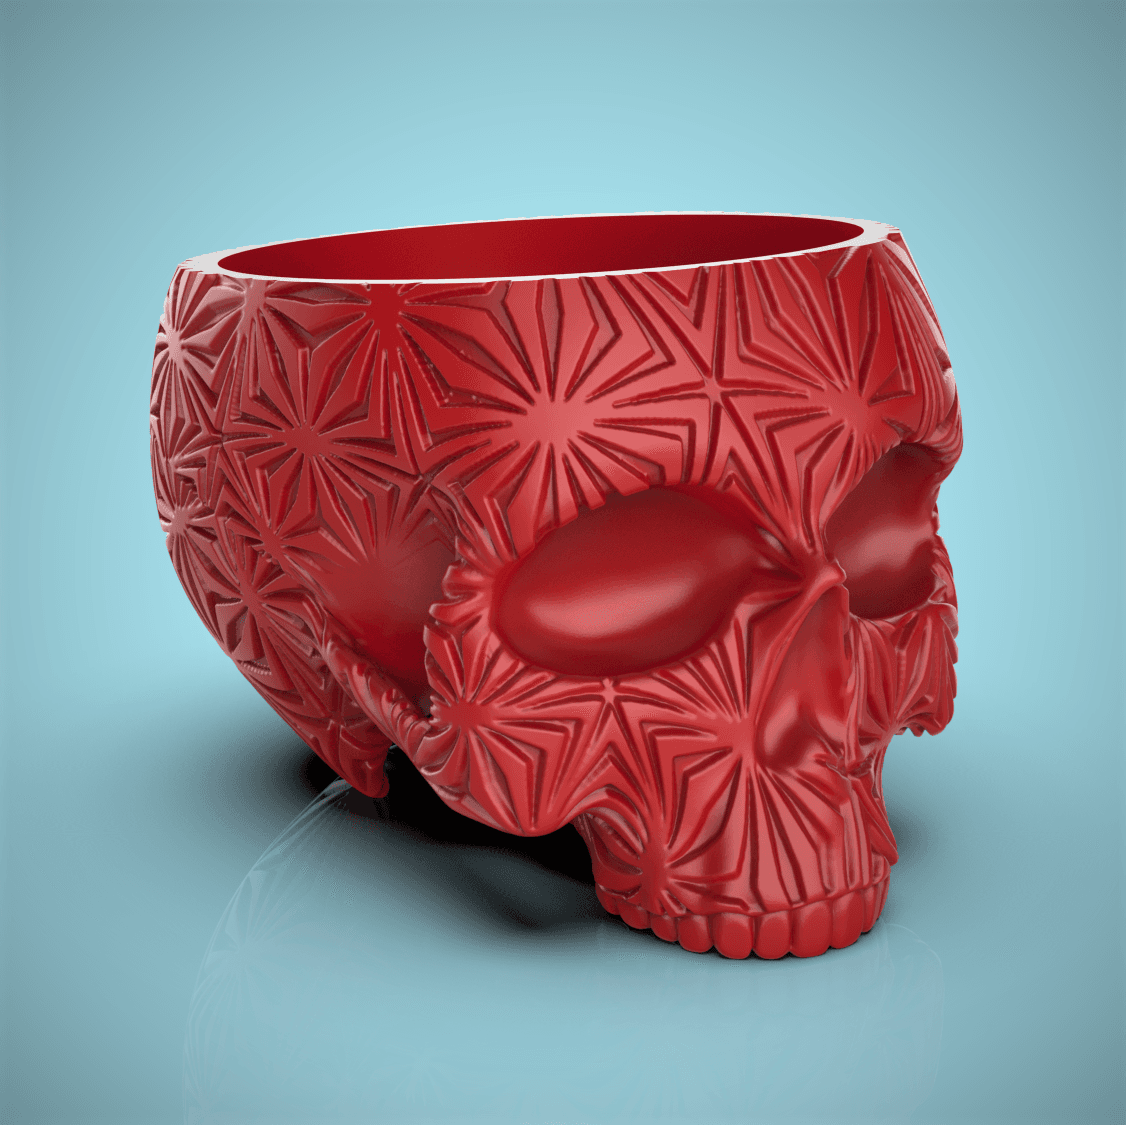 Star Burst Skull Planter-Bowl 3d model